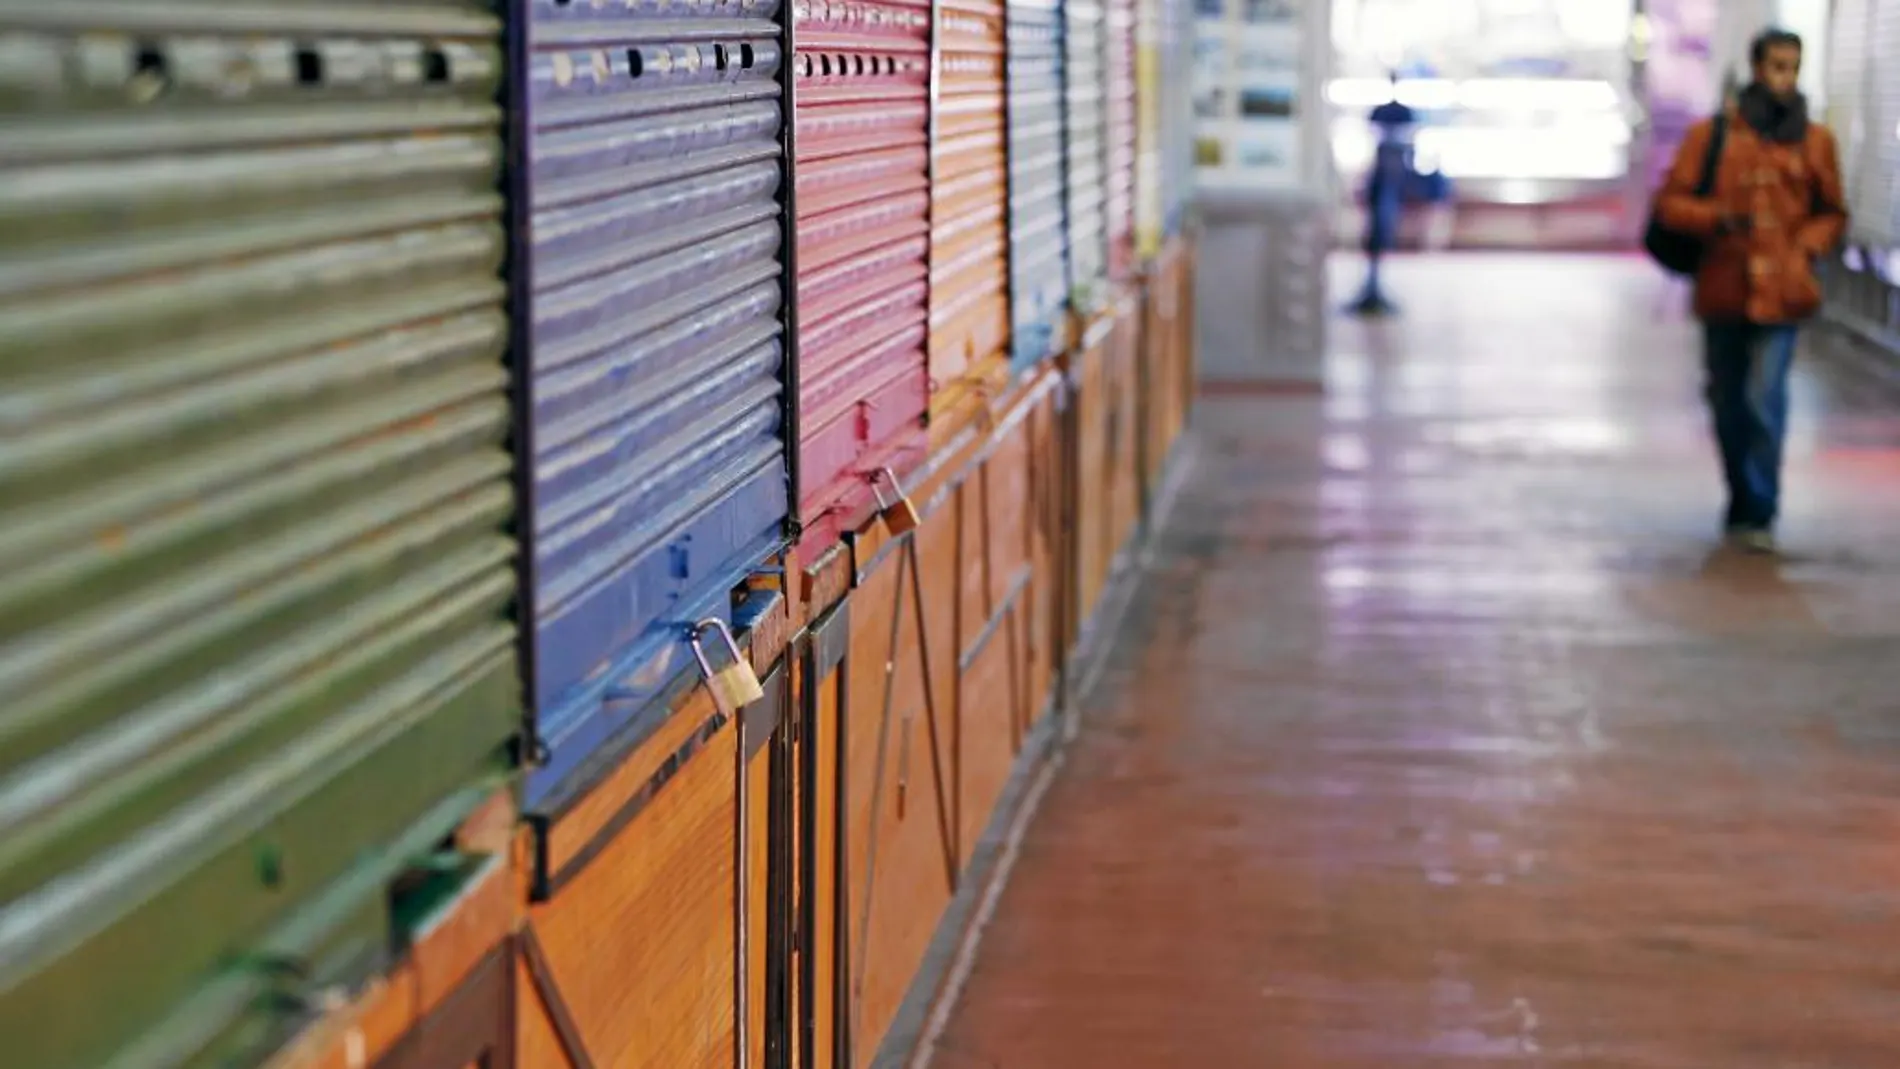 Decenas de cierres echados son la estampa habitual de los pasillos del mercado de la Cebada